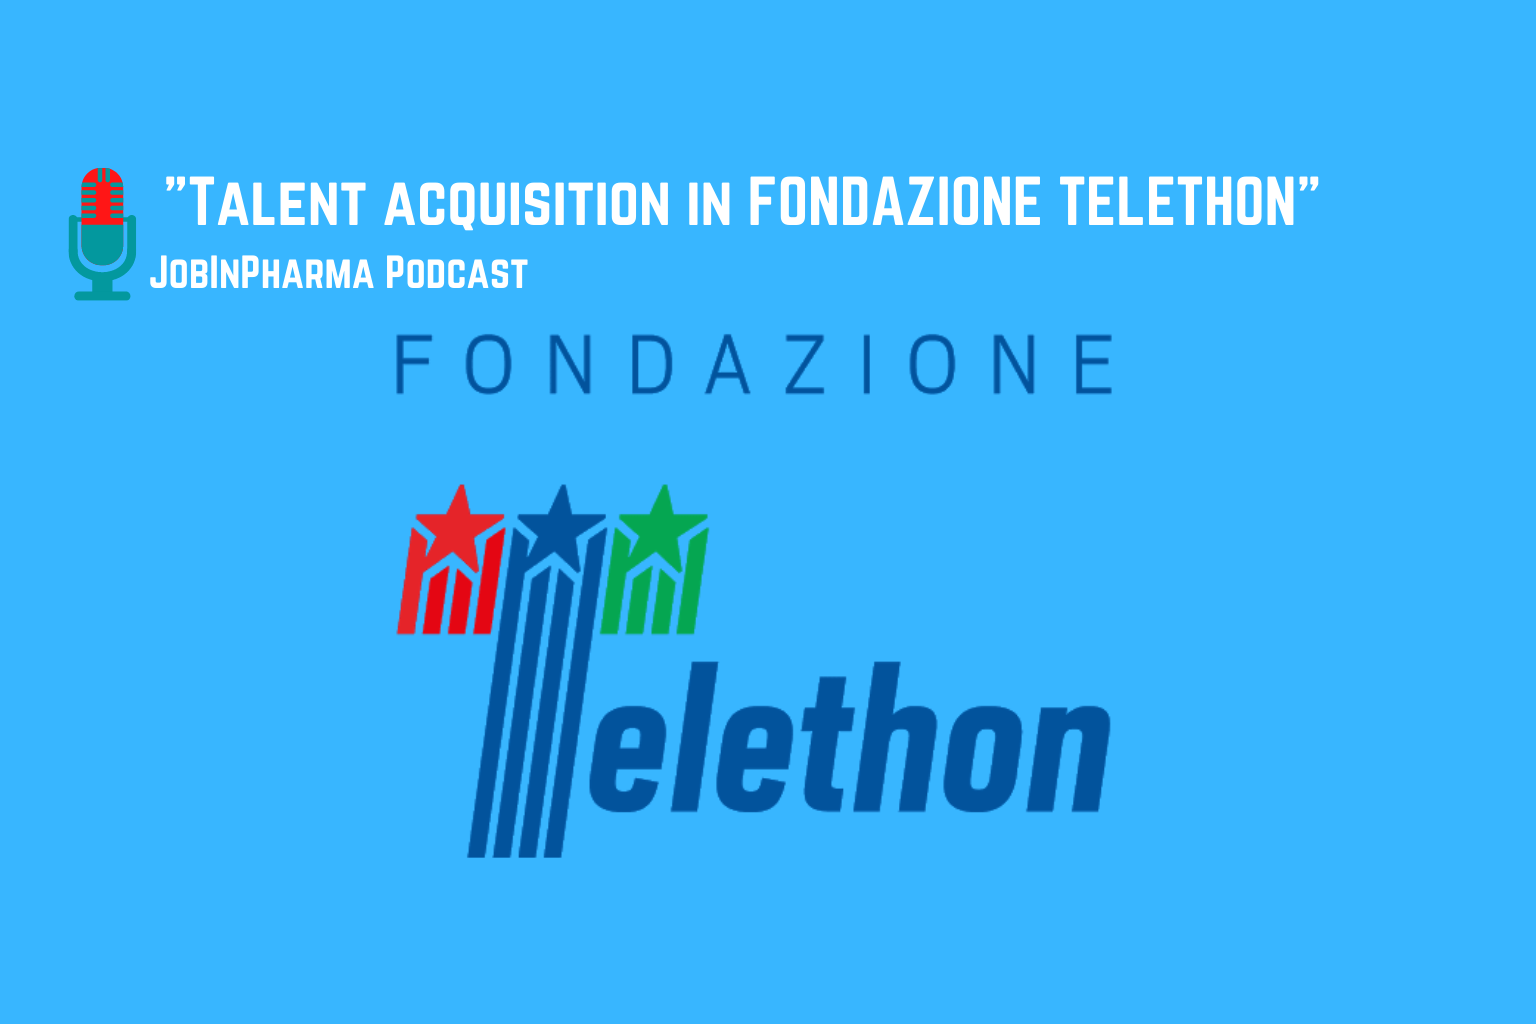 fondazione telethon per jobinpharma talent acquisition